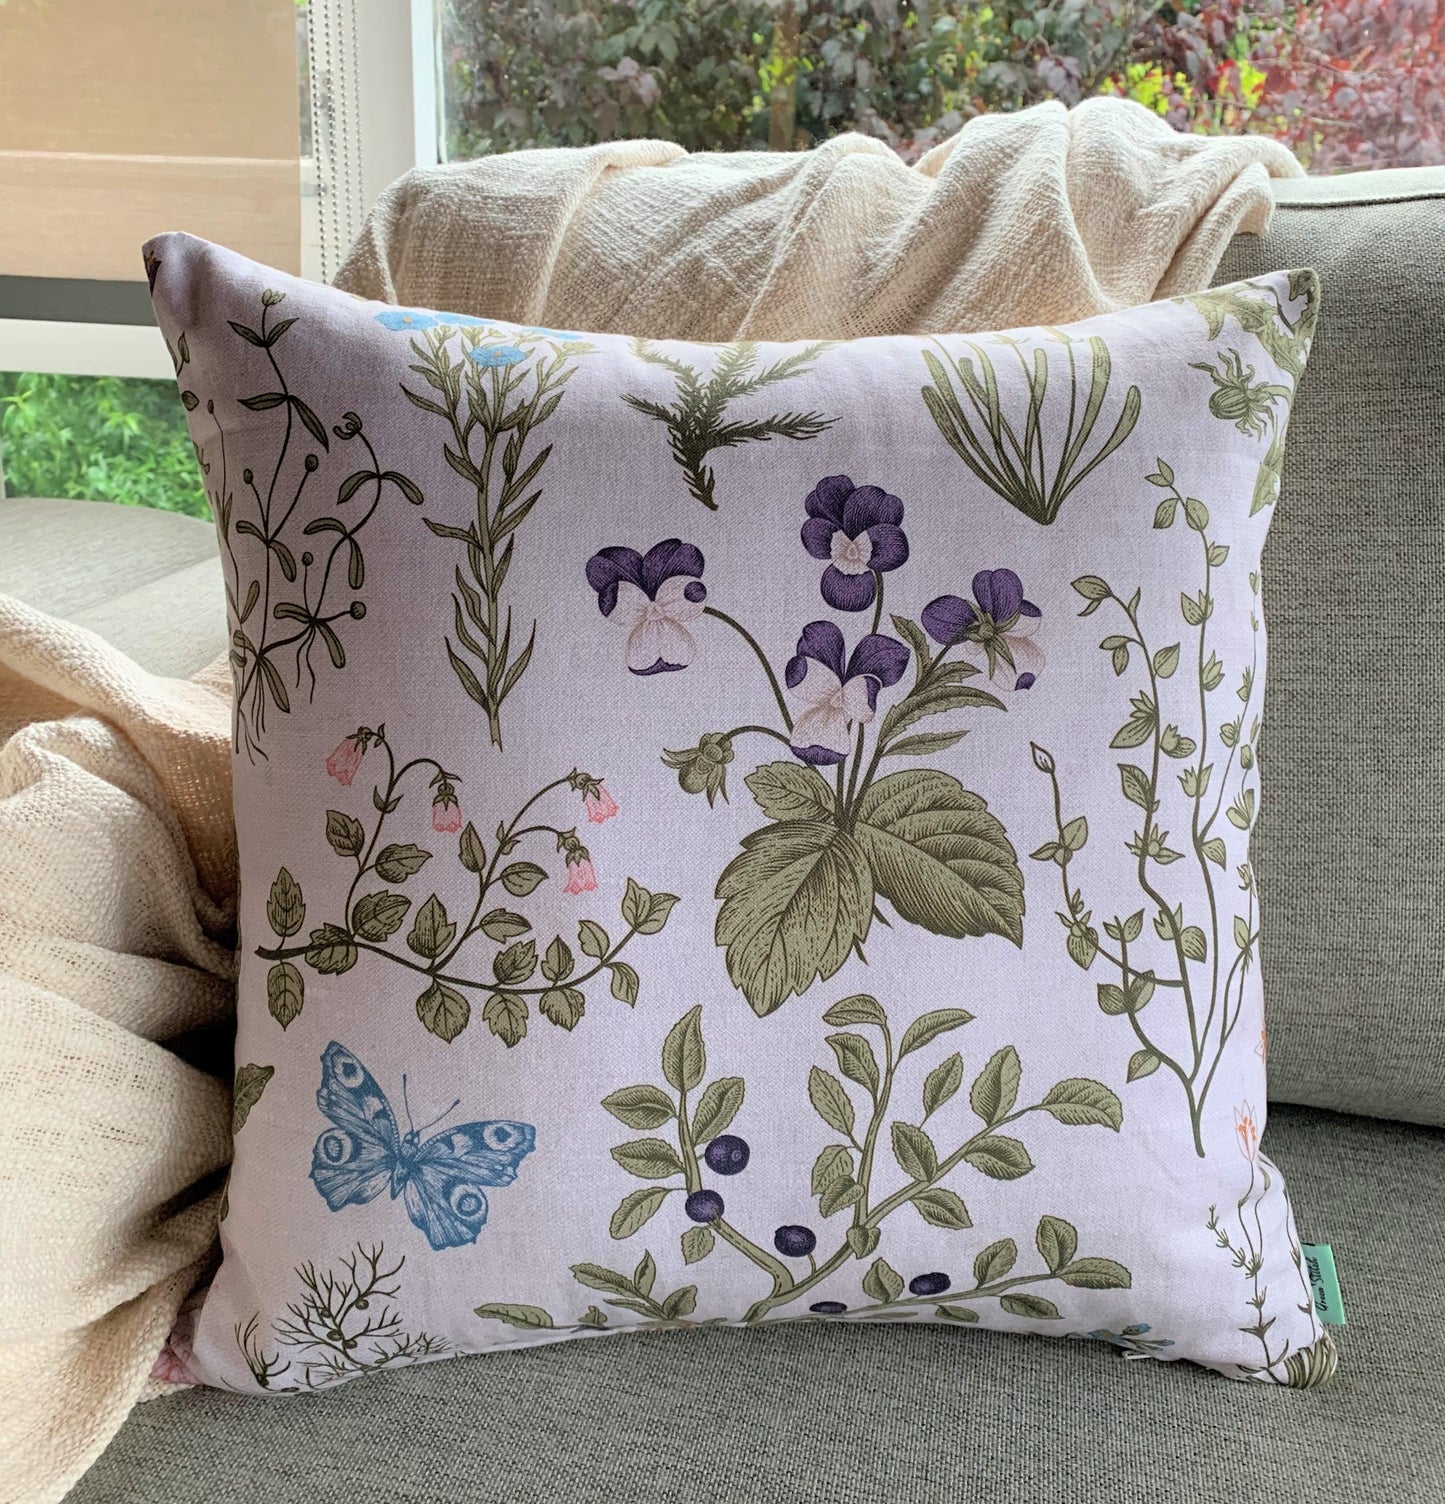 Plants & Butterflies - Cushion Cover - 45cm x 45cm